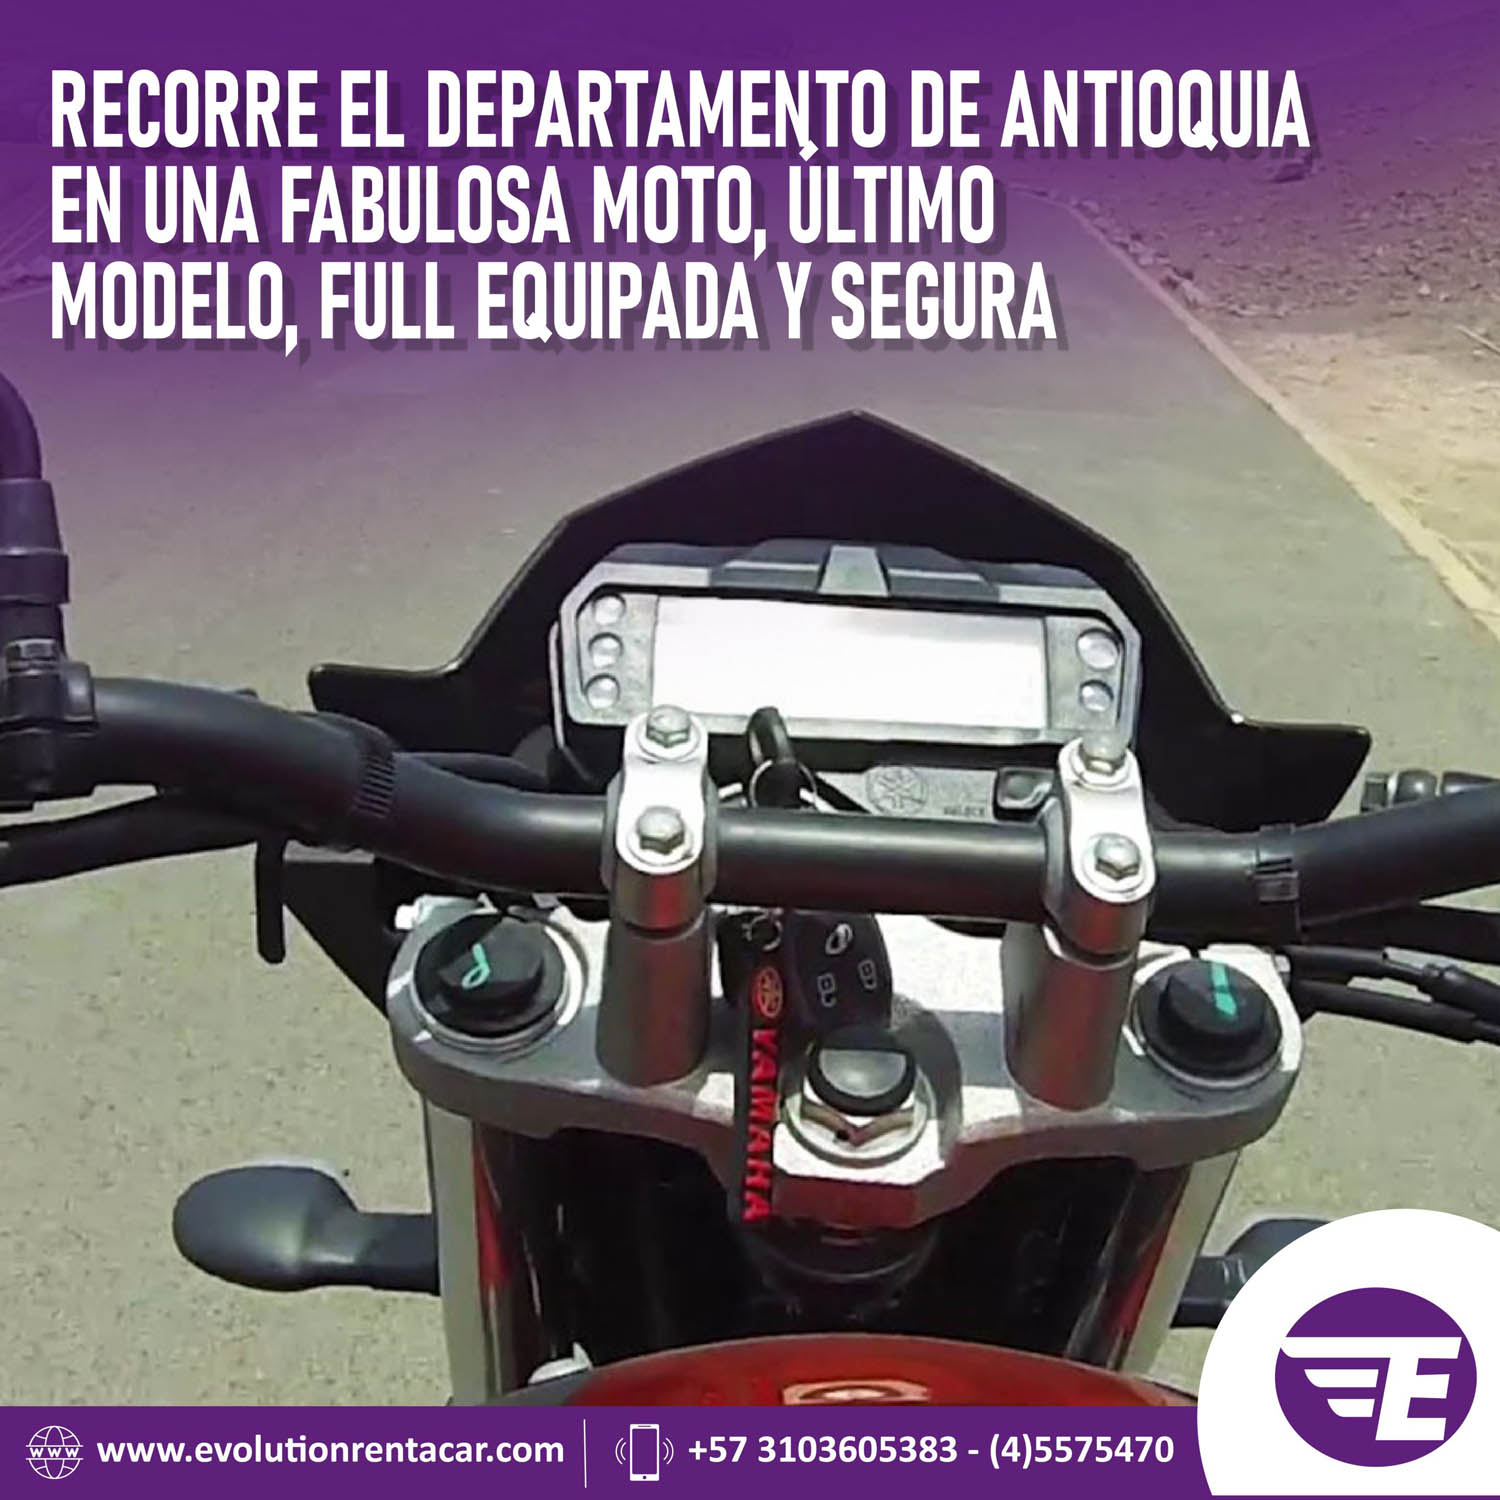 Alquiler Motos y carros en Rionegro